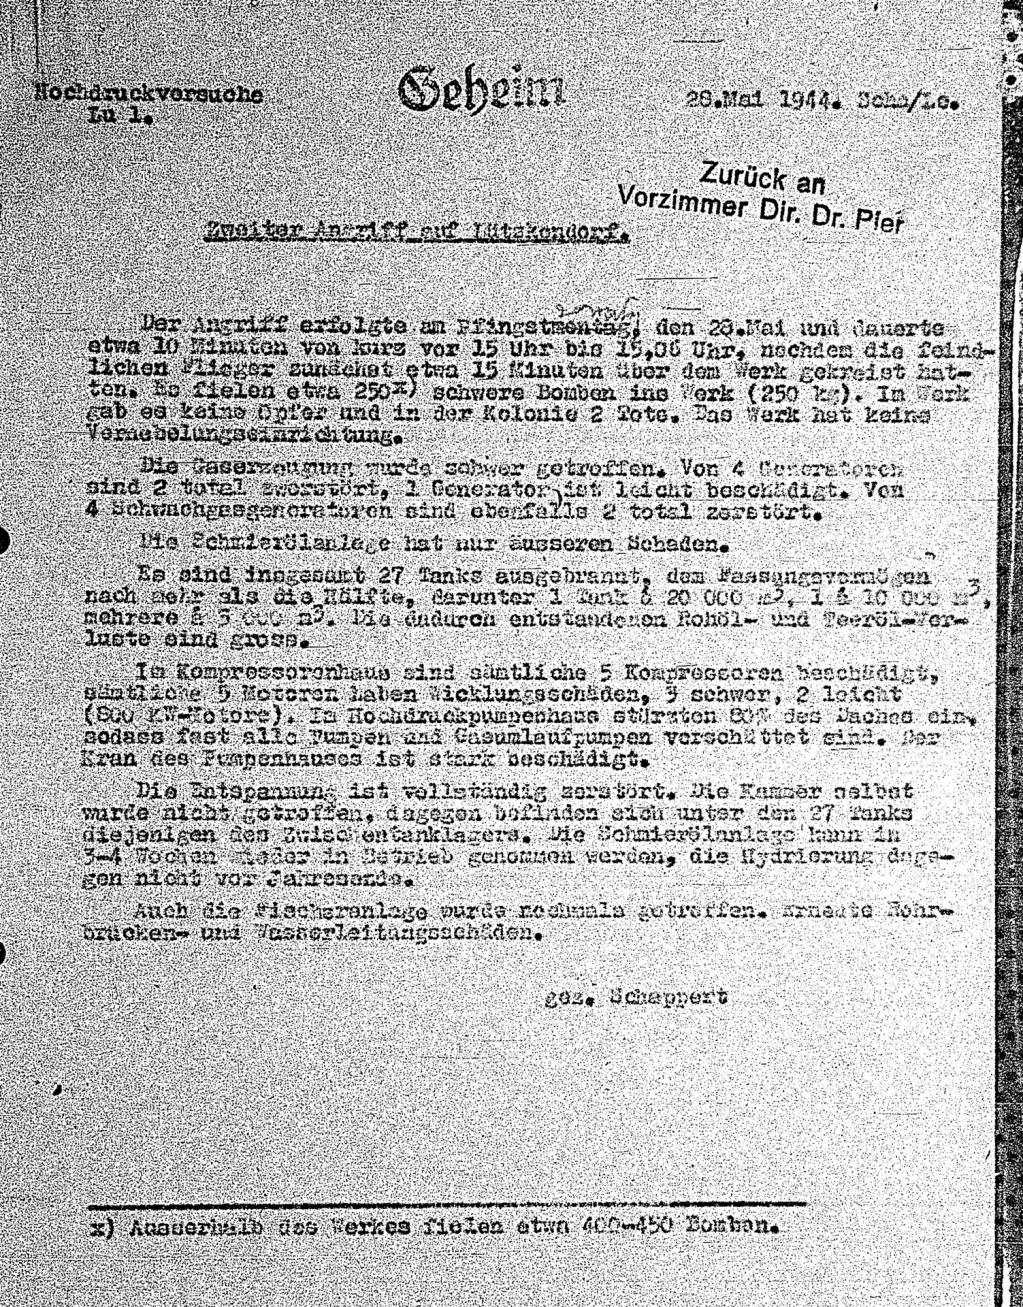 Bericht vom 28.5.1944 Werk Lützkendorf